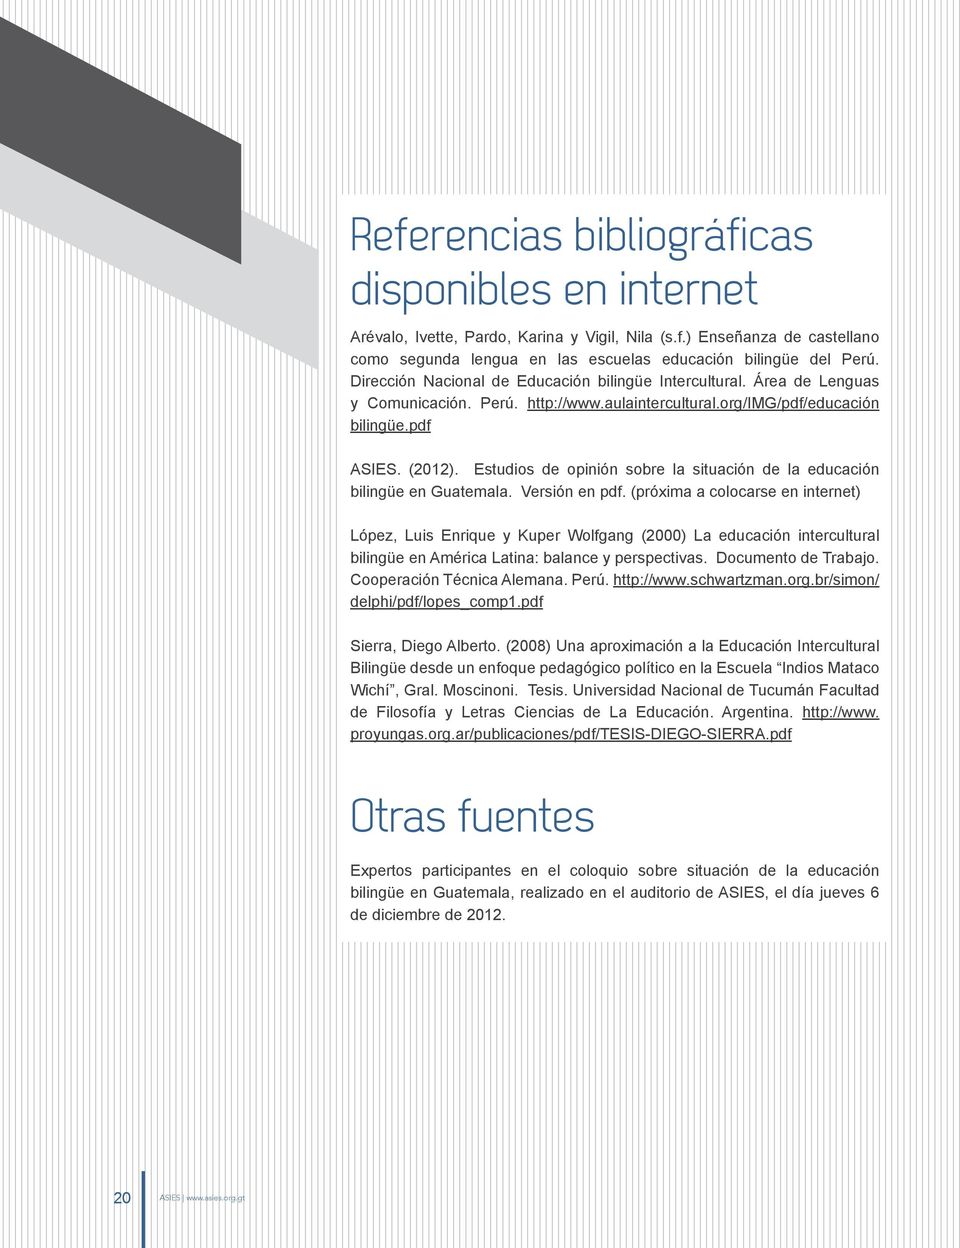 Estudios de opinión sobre la situación de la educación bilingüe en Guatemala. Versión en pdf.